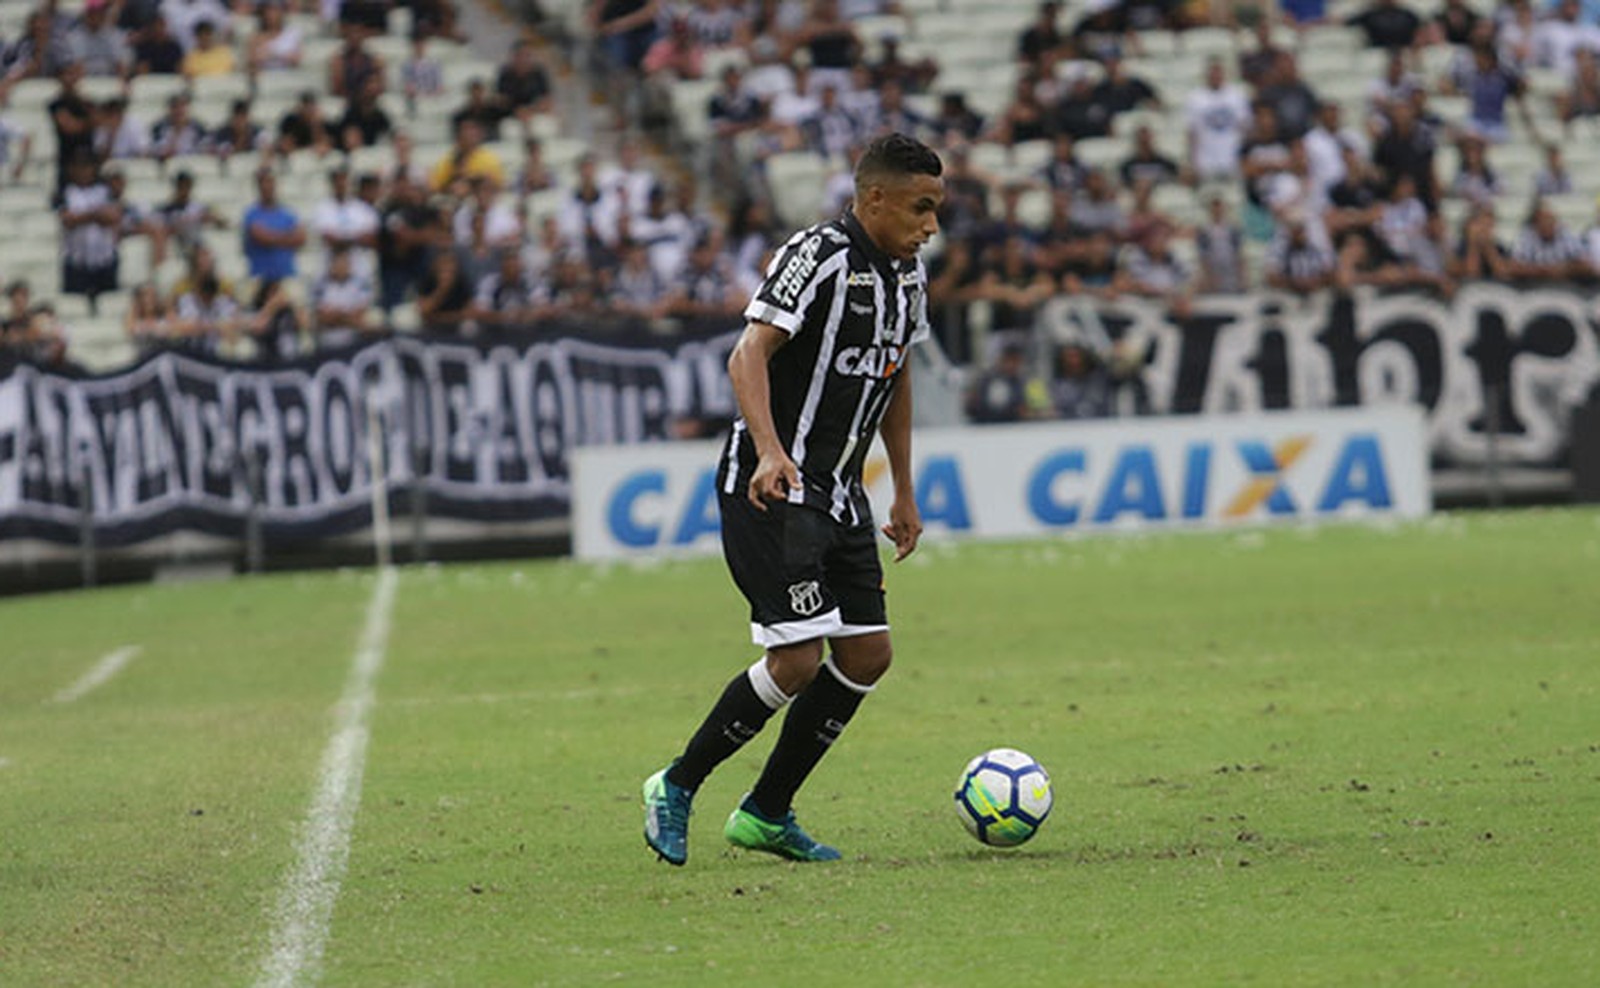 “Faremos de tudo para sair de campo com a vitória”, afirma lateral do Ceará sobre partida contra o Bahia